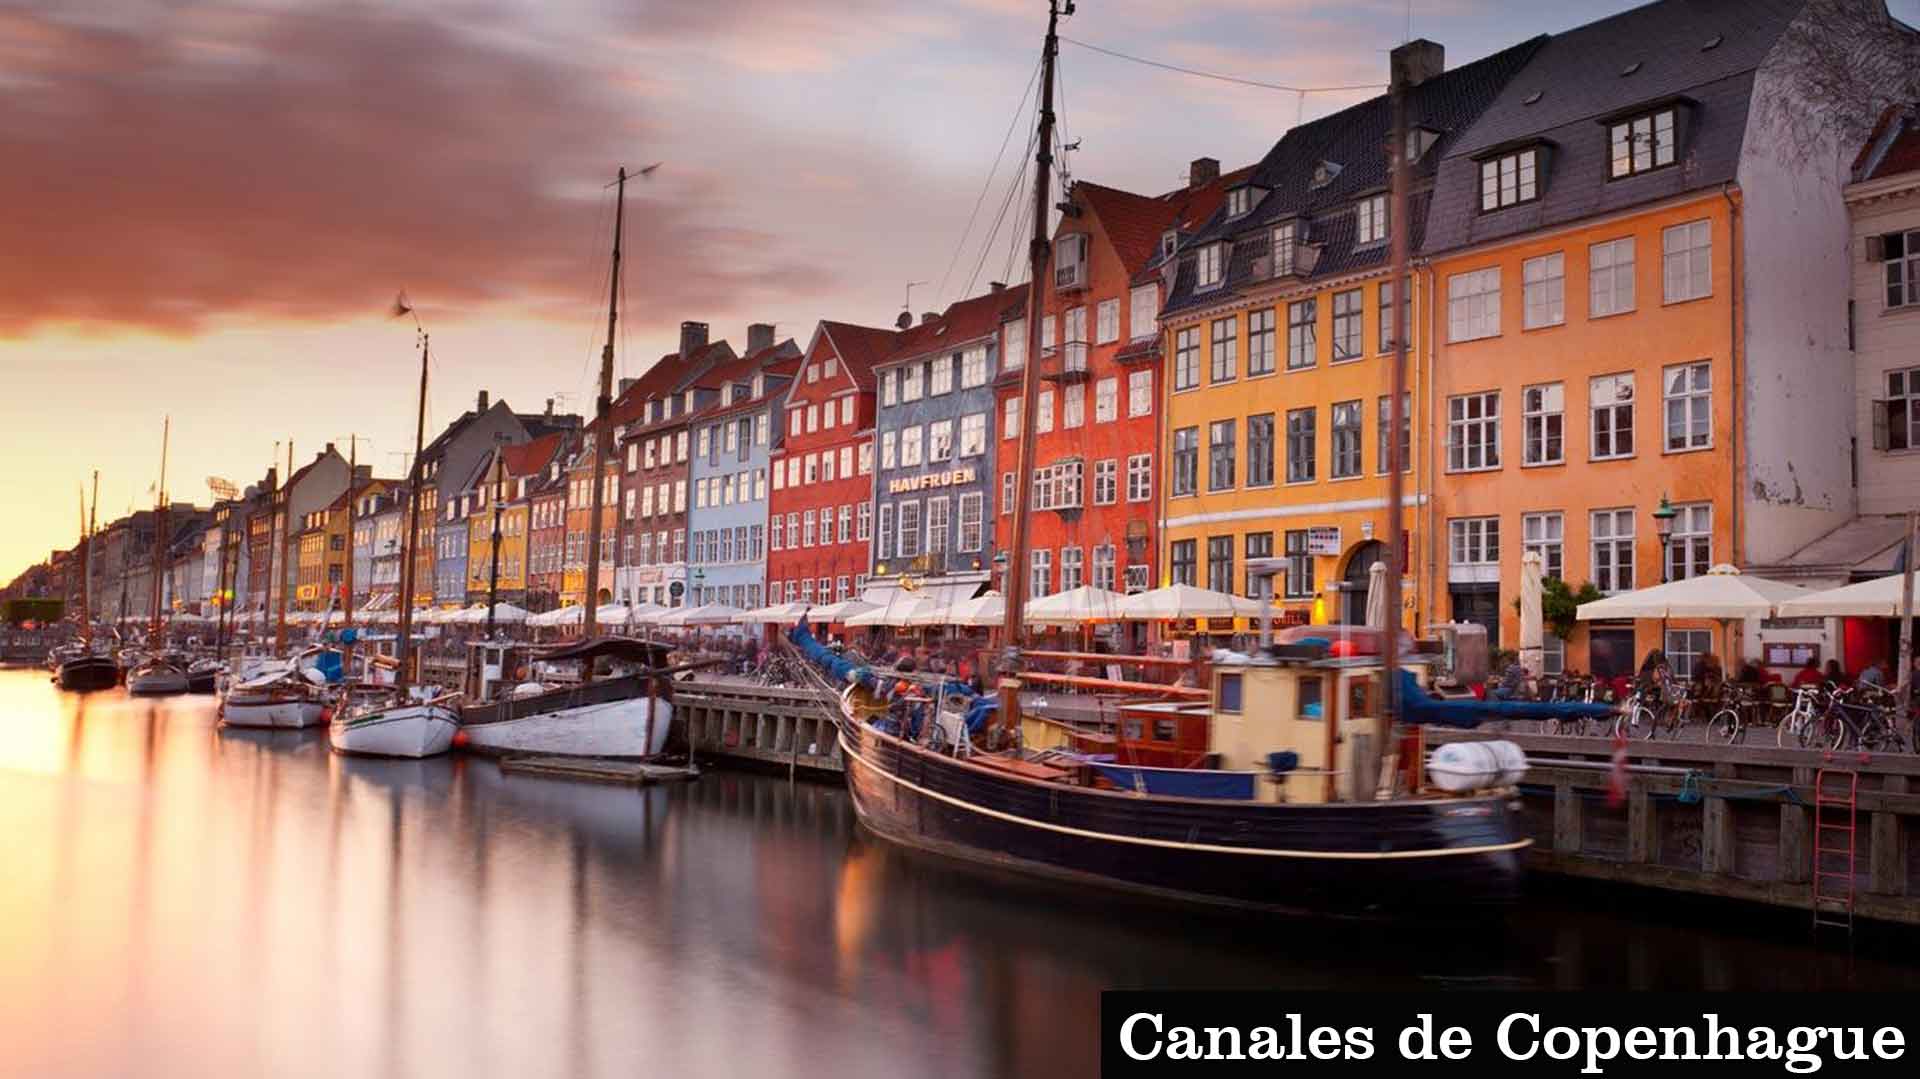 Canales-de-Copenhagueya